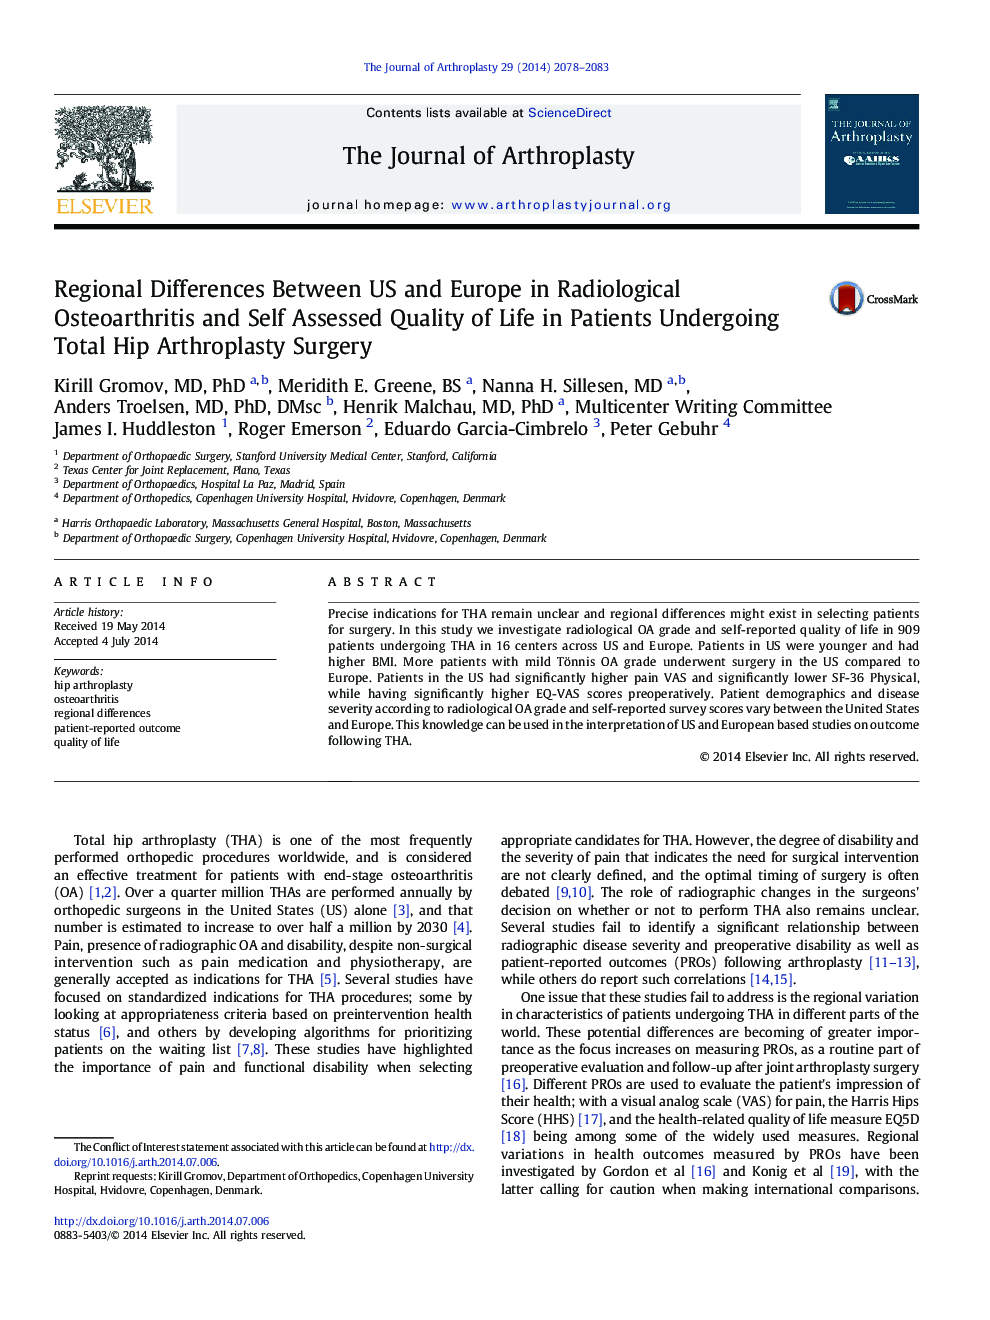 تفاوت های منطقه ای بین ایالات متحده و اروپا در معاینه رادیولوژیک استئوآرتریت و کیفیت زندگی خود ارزیابی شده در بیماران تحت جراحی کامل آرتروپلاستی هیپ 